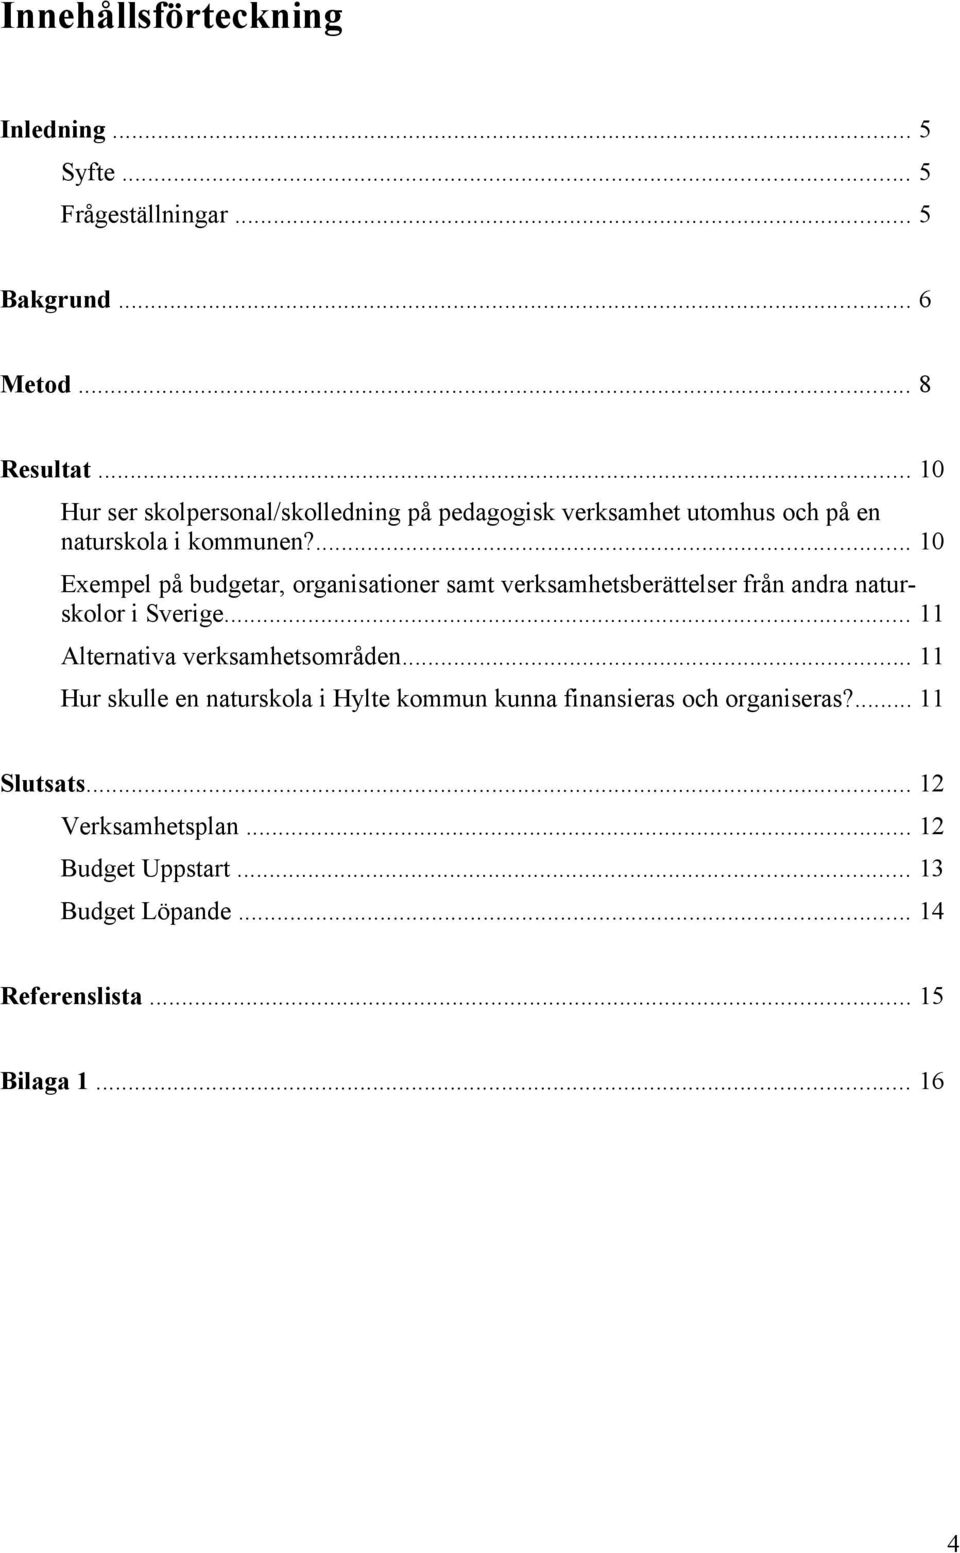 ... 10 Exempel på budgetar, organisationer samt verksamhetsberättelser från andra naturskolor i Sverige.